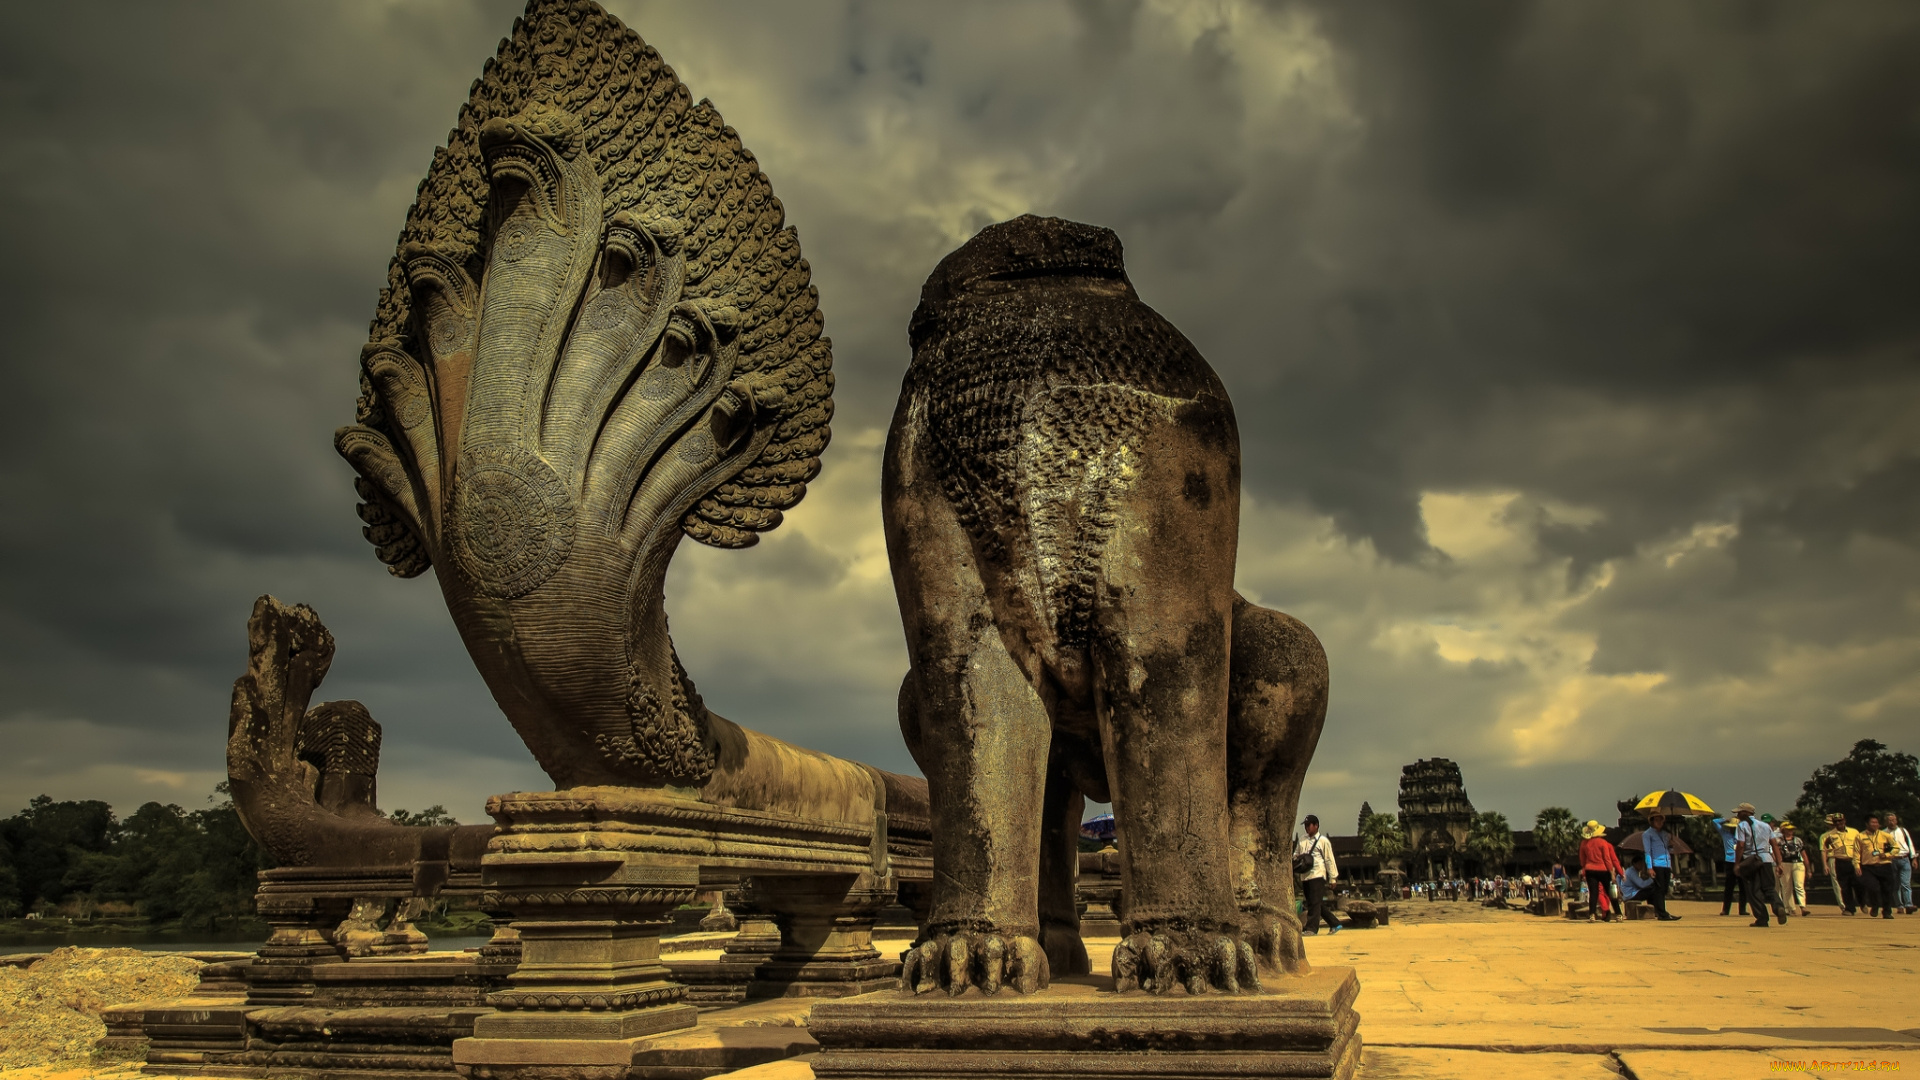 cambodia, города, -, памятники, , скульптуры, , арт-объекты, скульптура, старина, экскурсия, памятник, древность